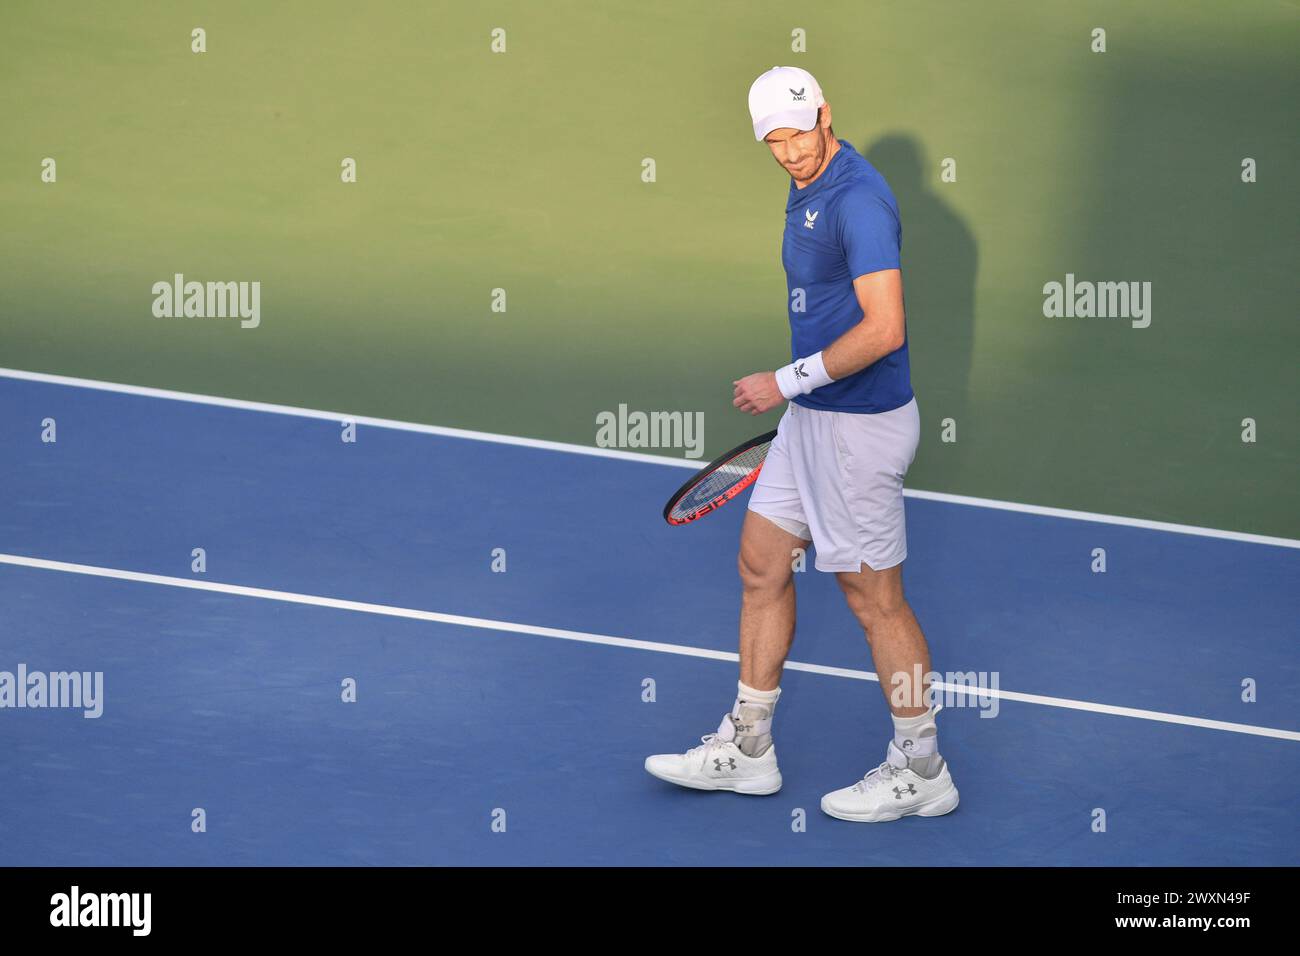 Dubaï, le 26 février 2024-photo du joueur de tennis britannique Andy Murray en action. Dubaï Duty Free Tennis Championships 2024, situé à Dubaï Banque D'Images